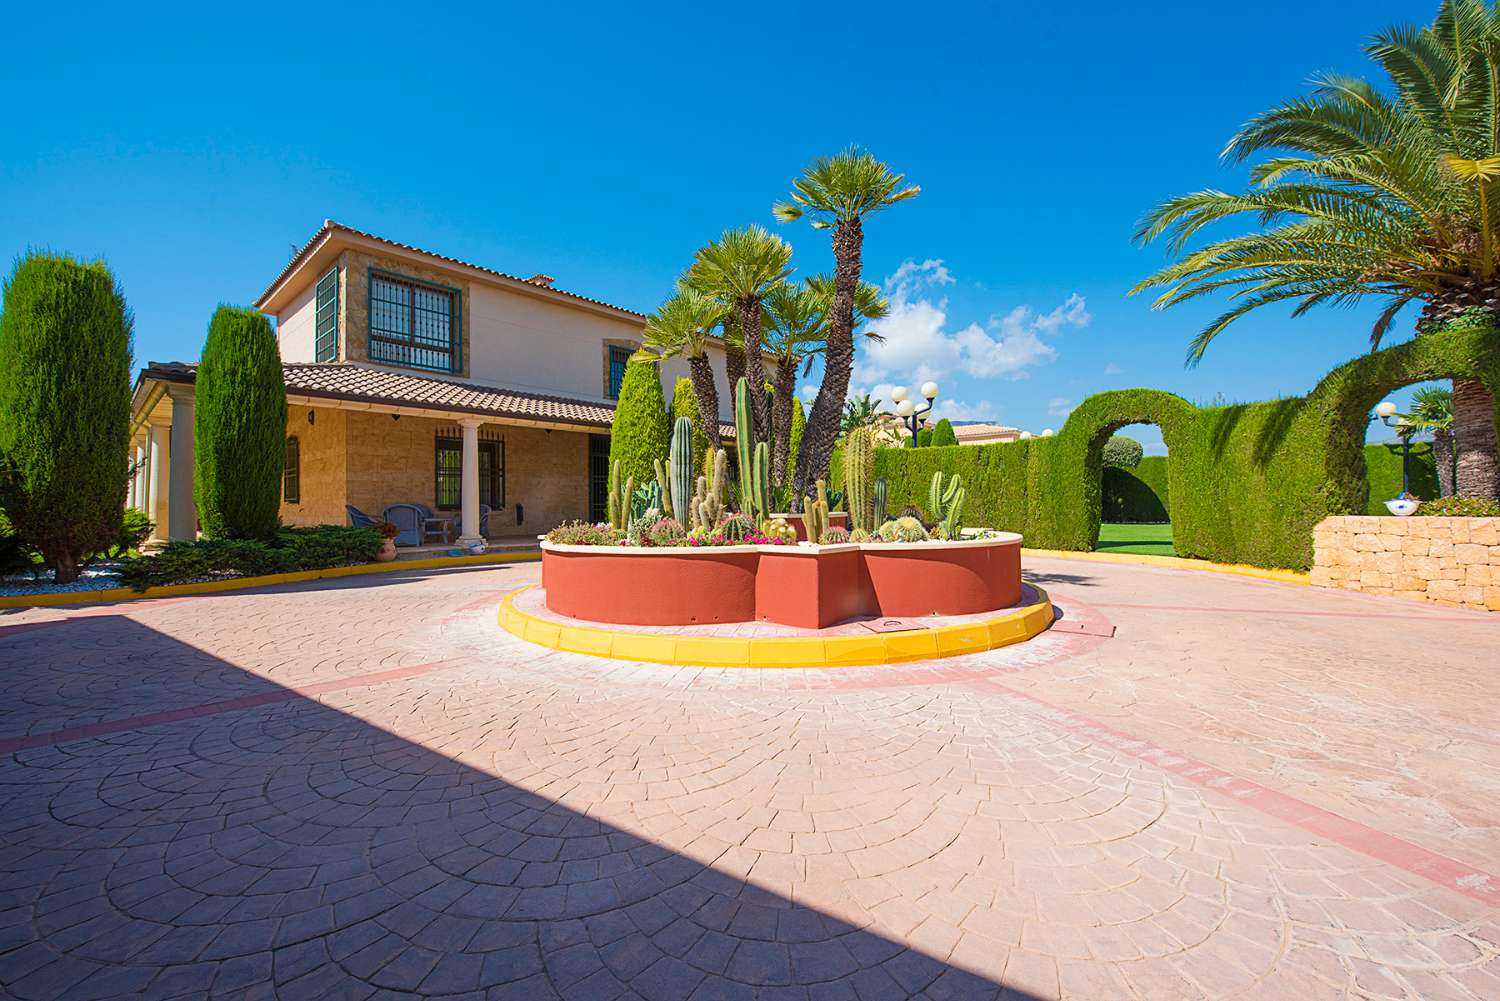 Villa de lujo con 4.000 m² de terreno y 900 m² de casa, piscina, 8 habitaciones, 9 baños, en Calpe (Costa Blanca)